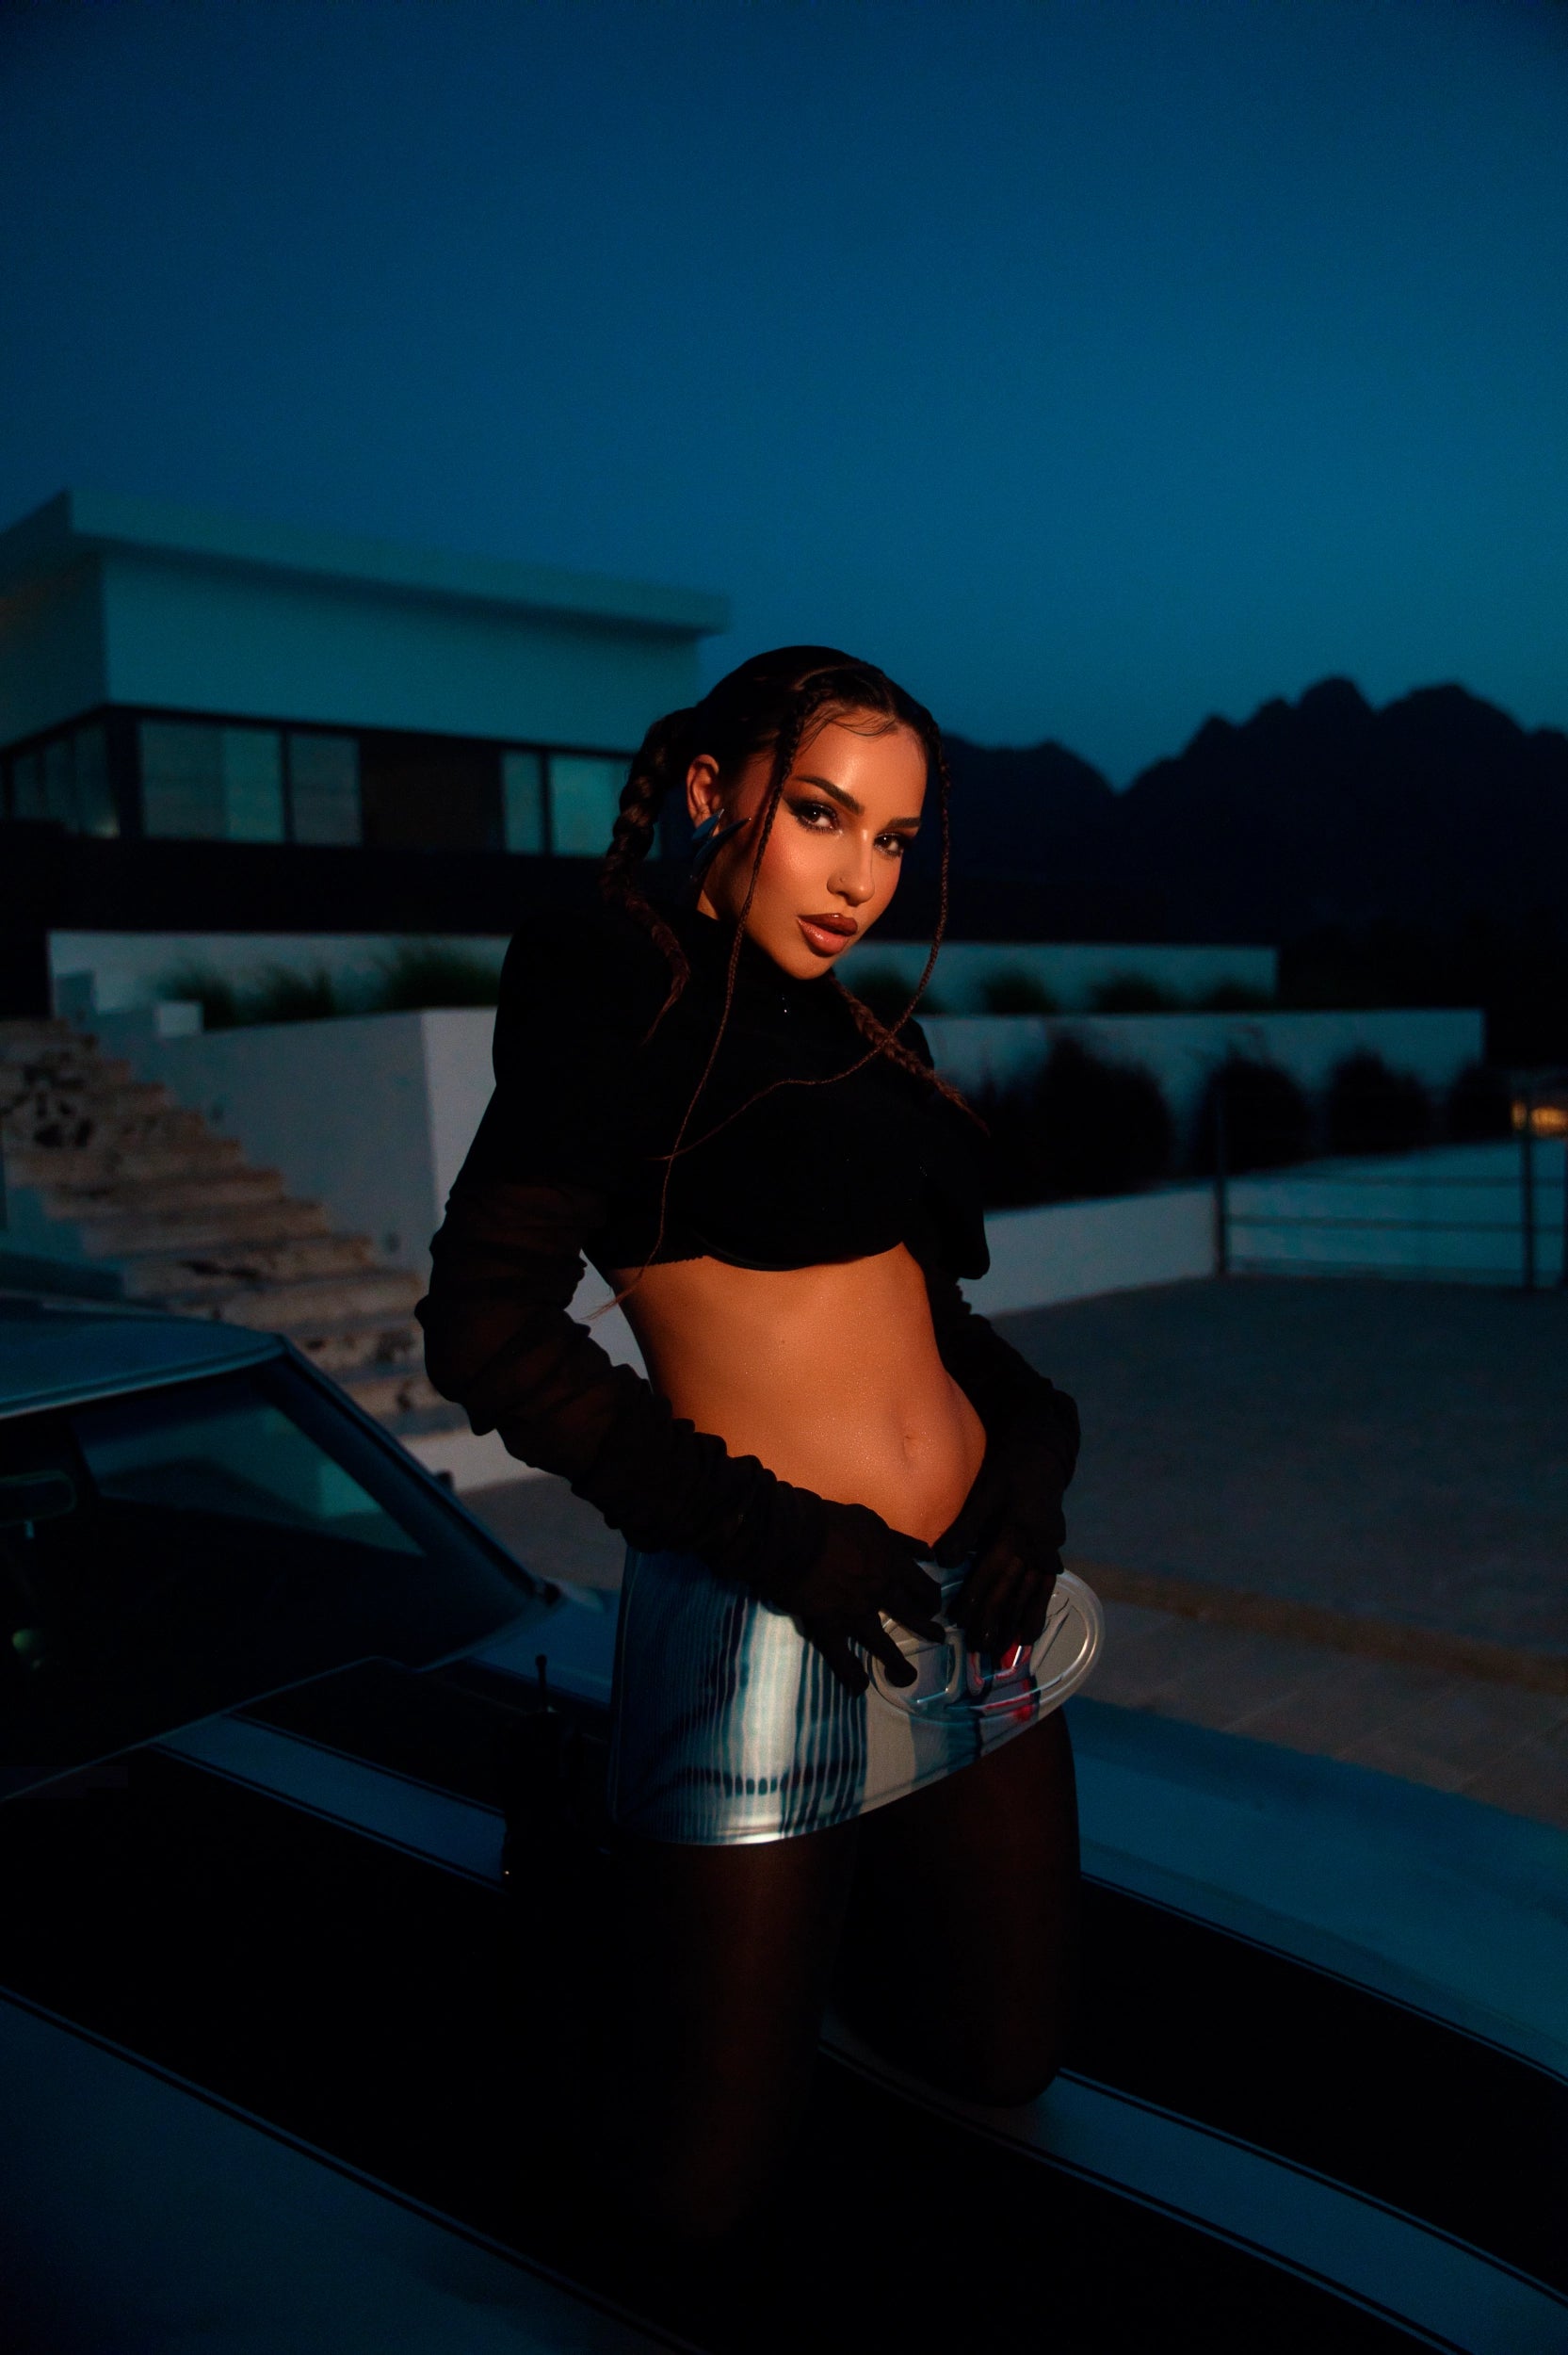 Sängerin Kida vor einer Villa im schwarzen Outfit gestylt von fashion stylist Monda Kul.